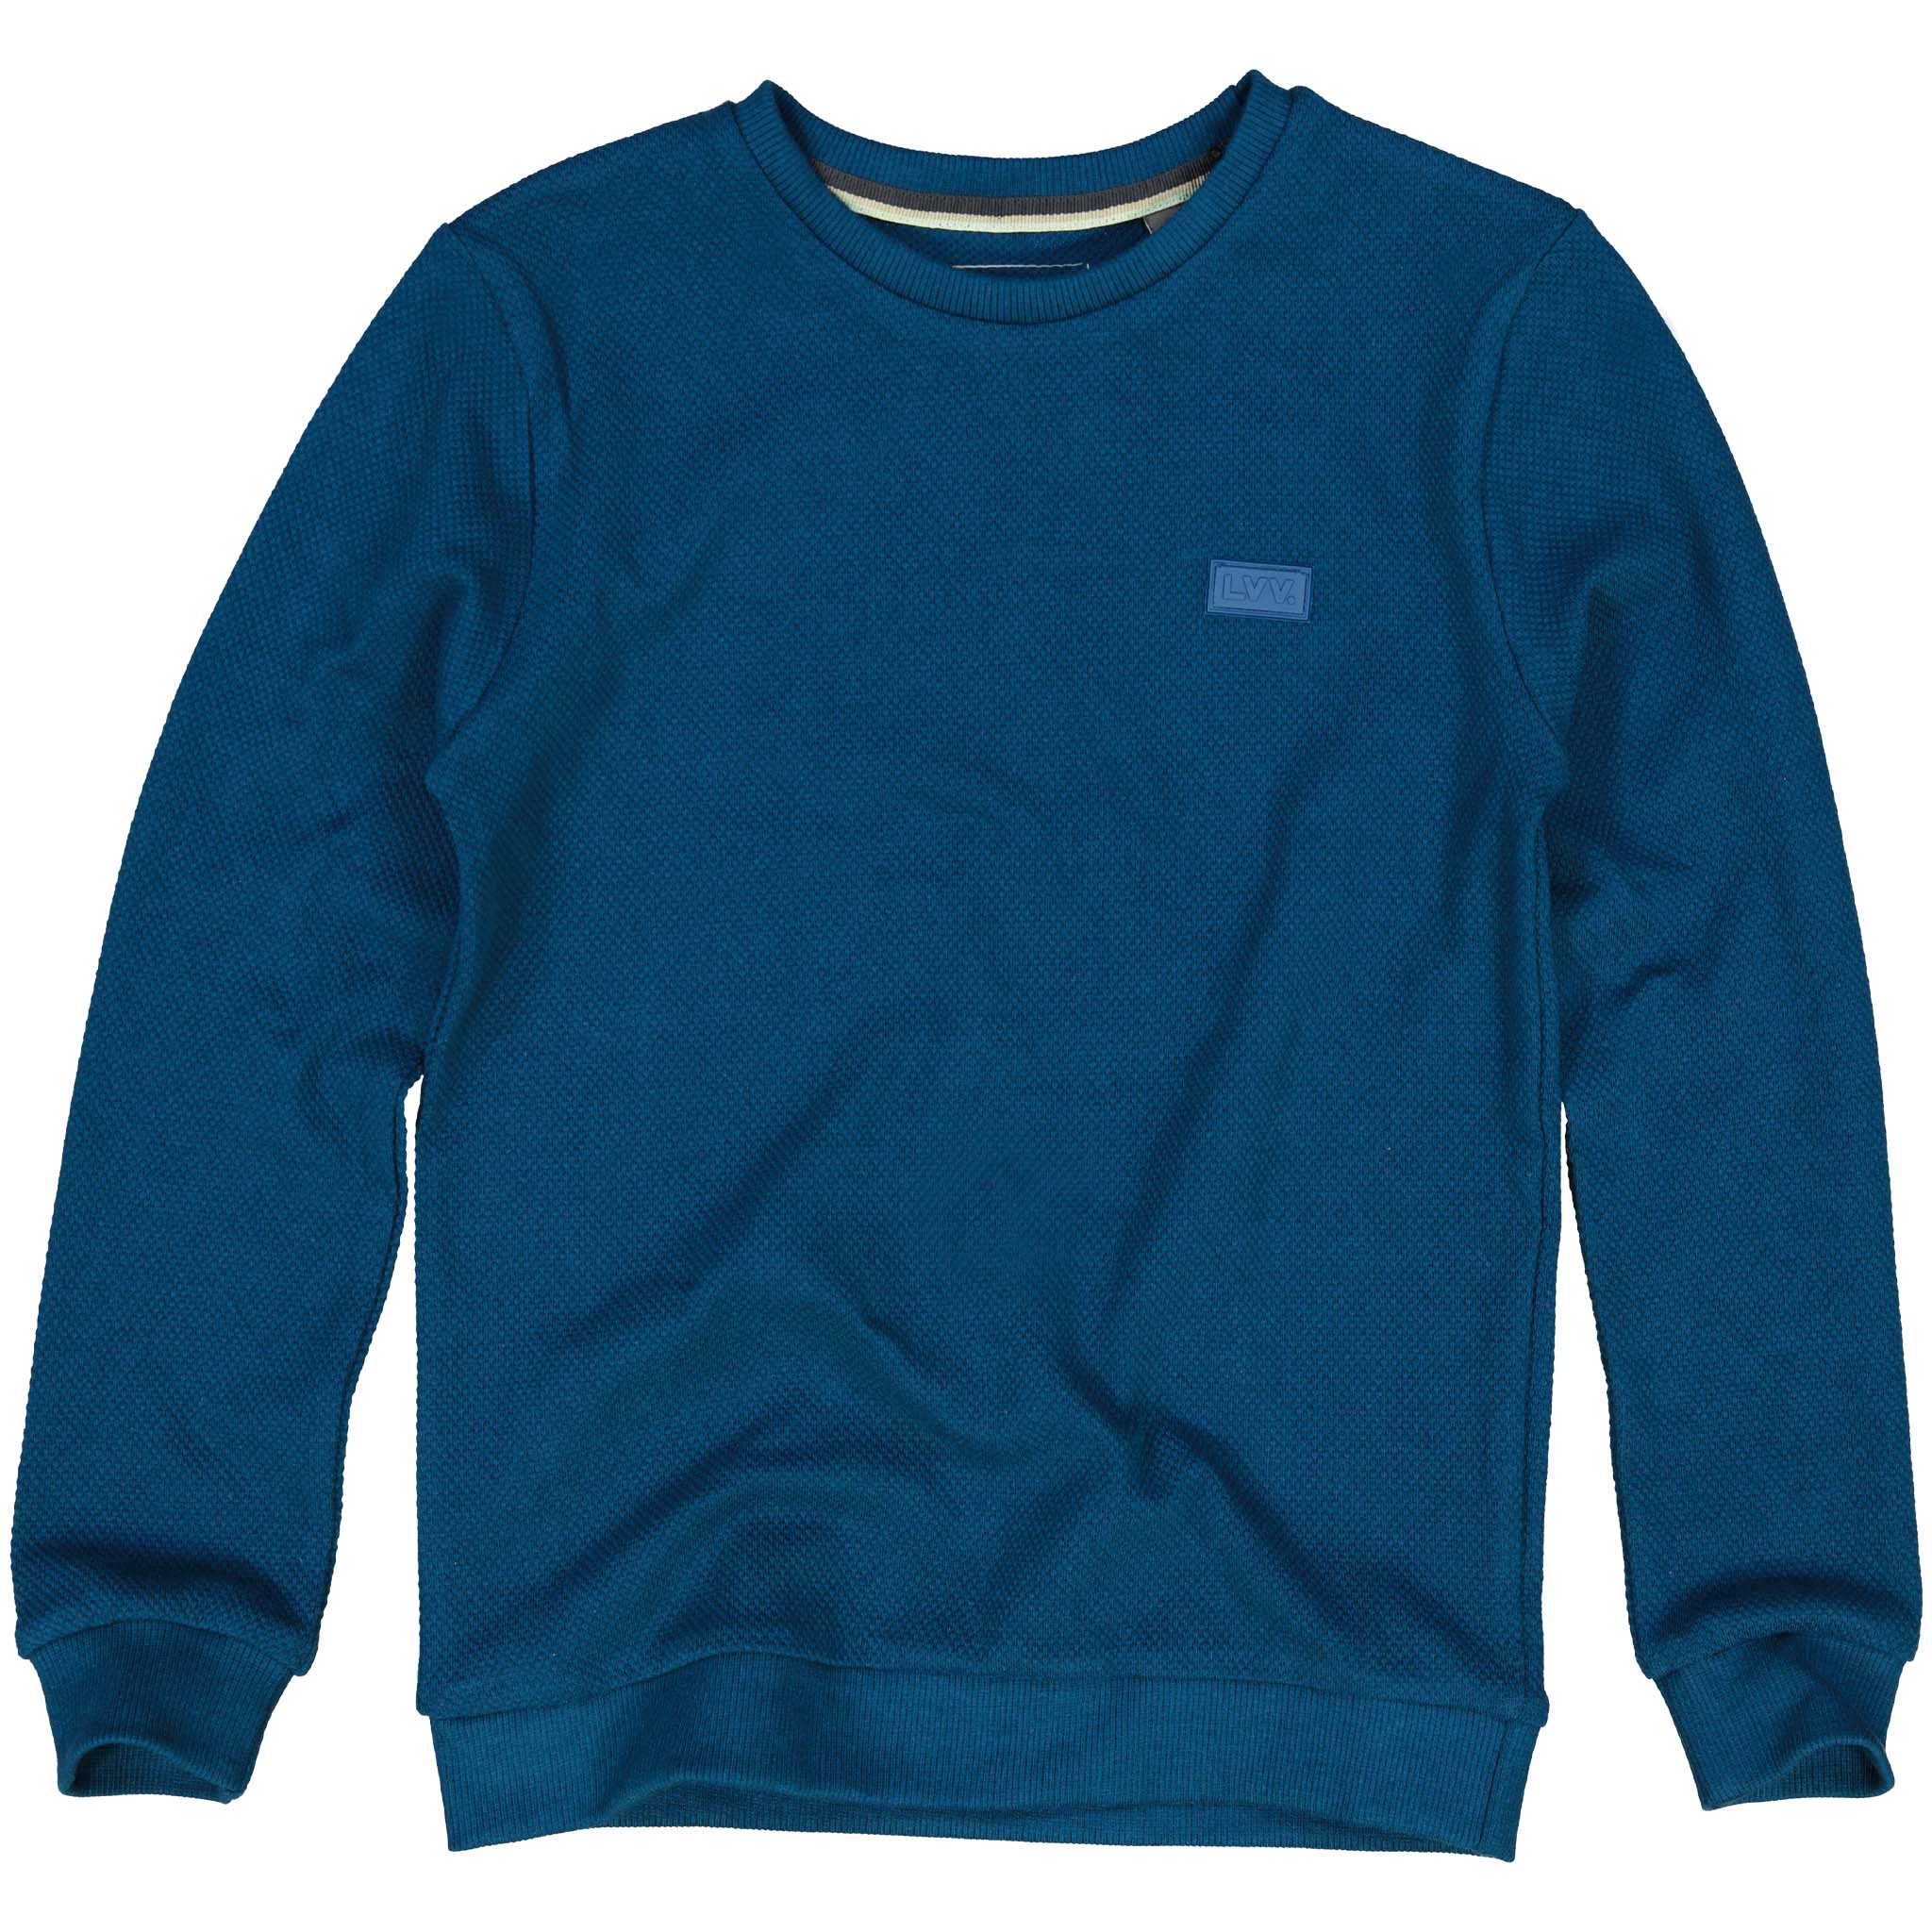 Jongens Sweater REV W211 van LEVV in de kleur Blue Sea in maat 176.